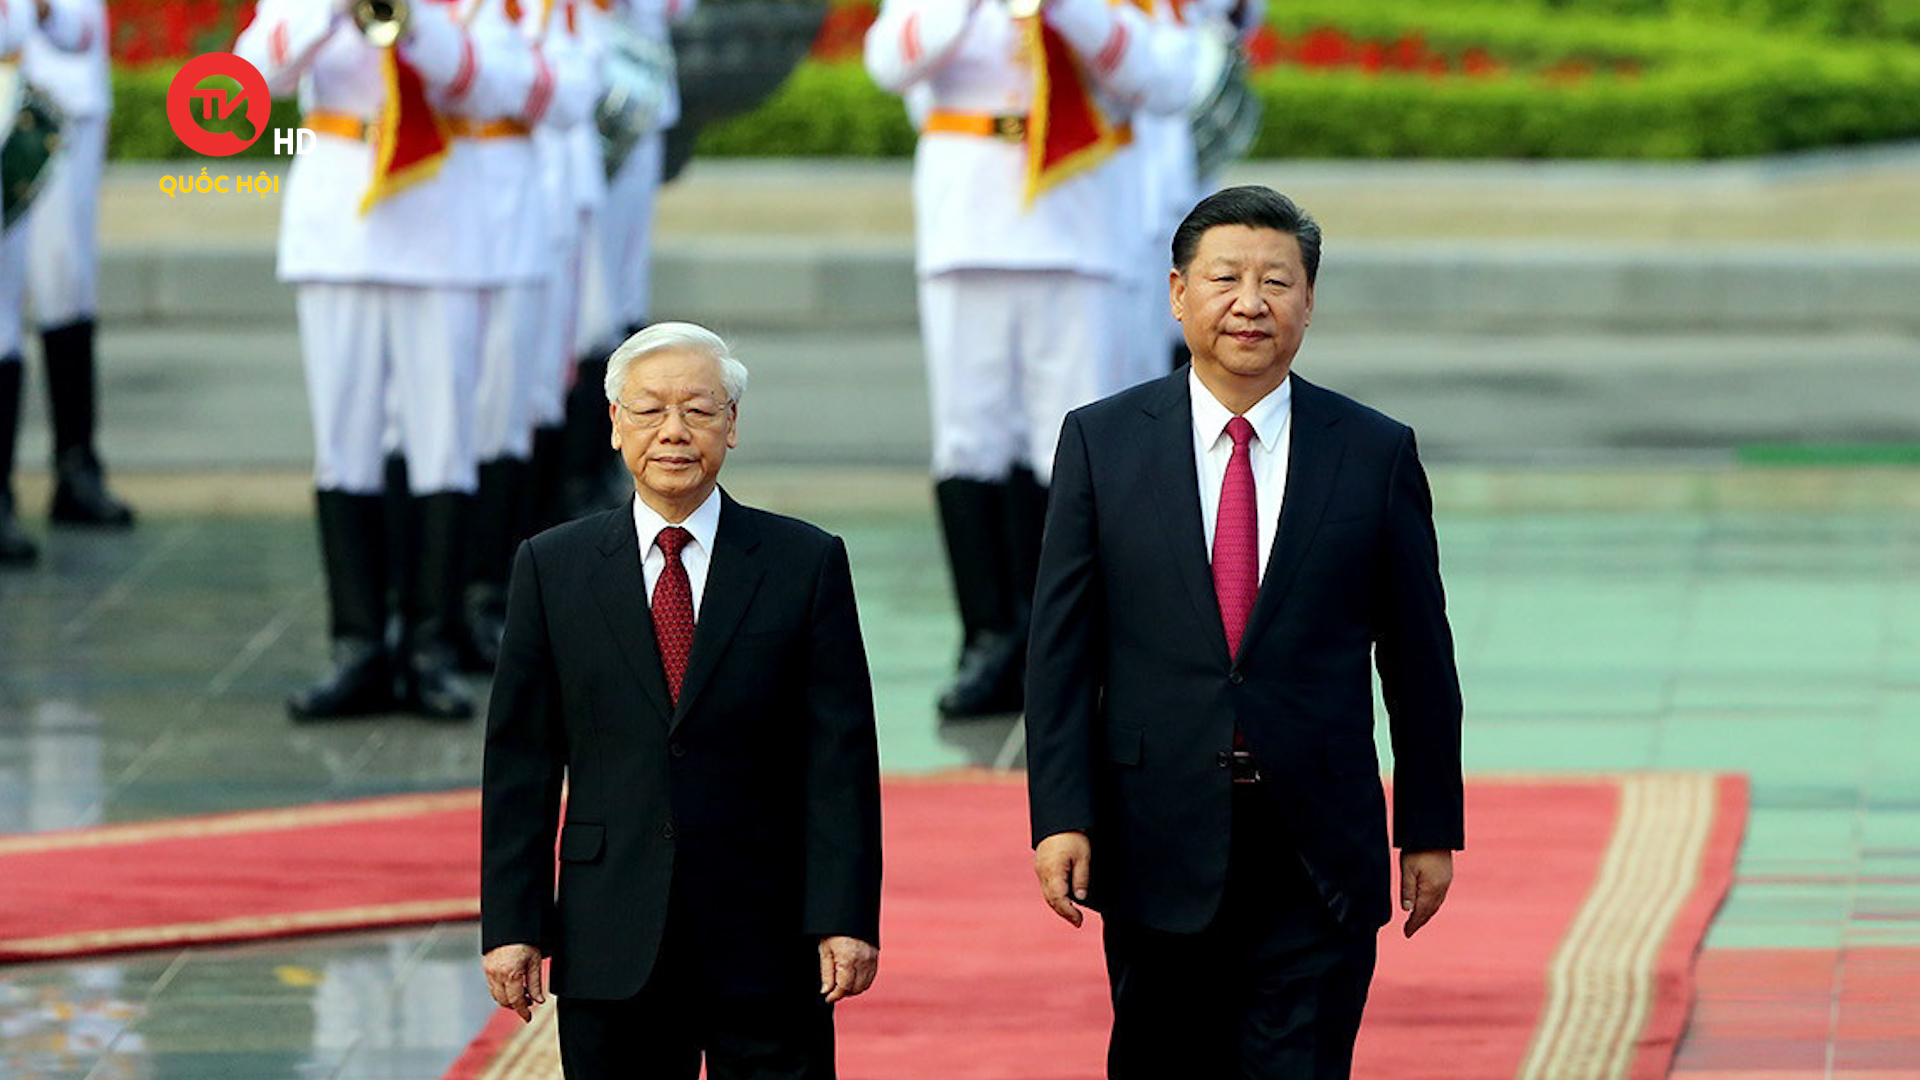 Tổng Bí thư Nguyễn Phú Trọng cùng đoàn lãnh đạo lên đường thăm chính thức Trung Quốc